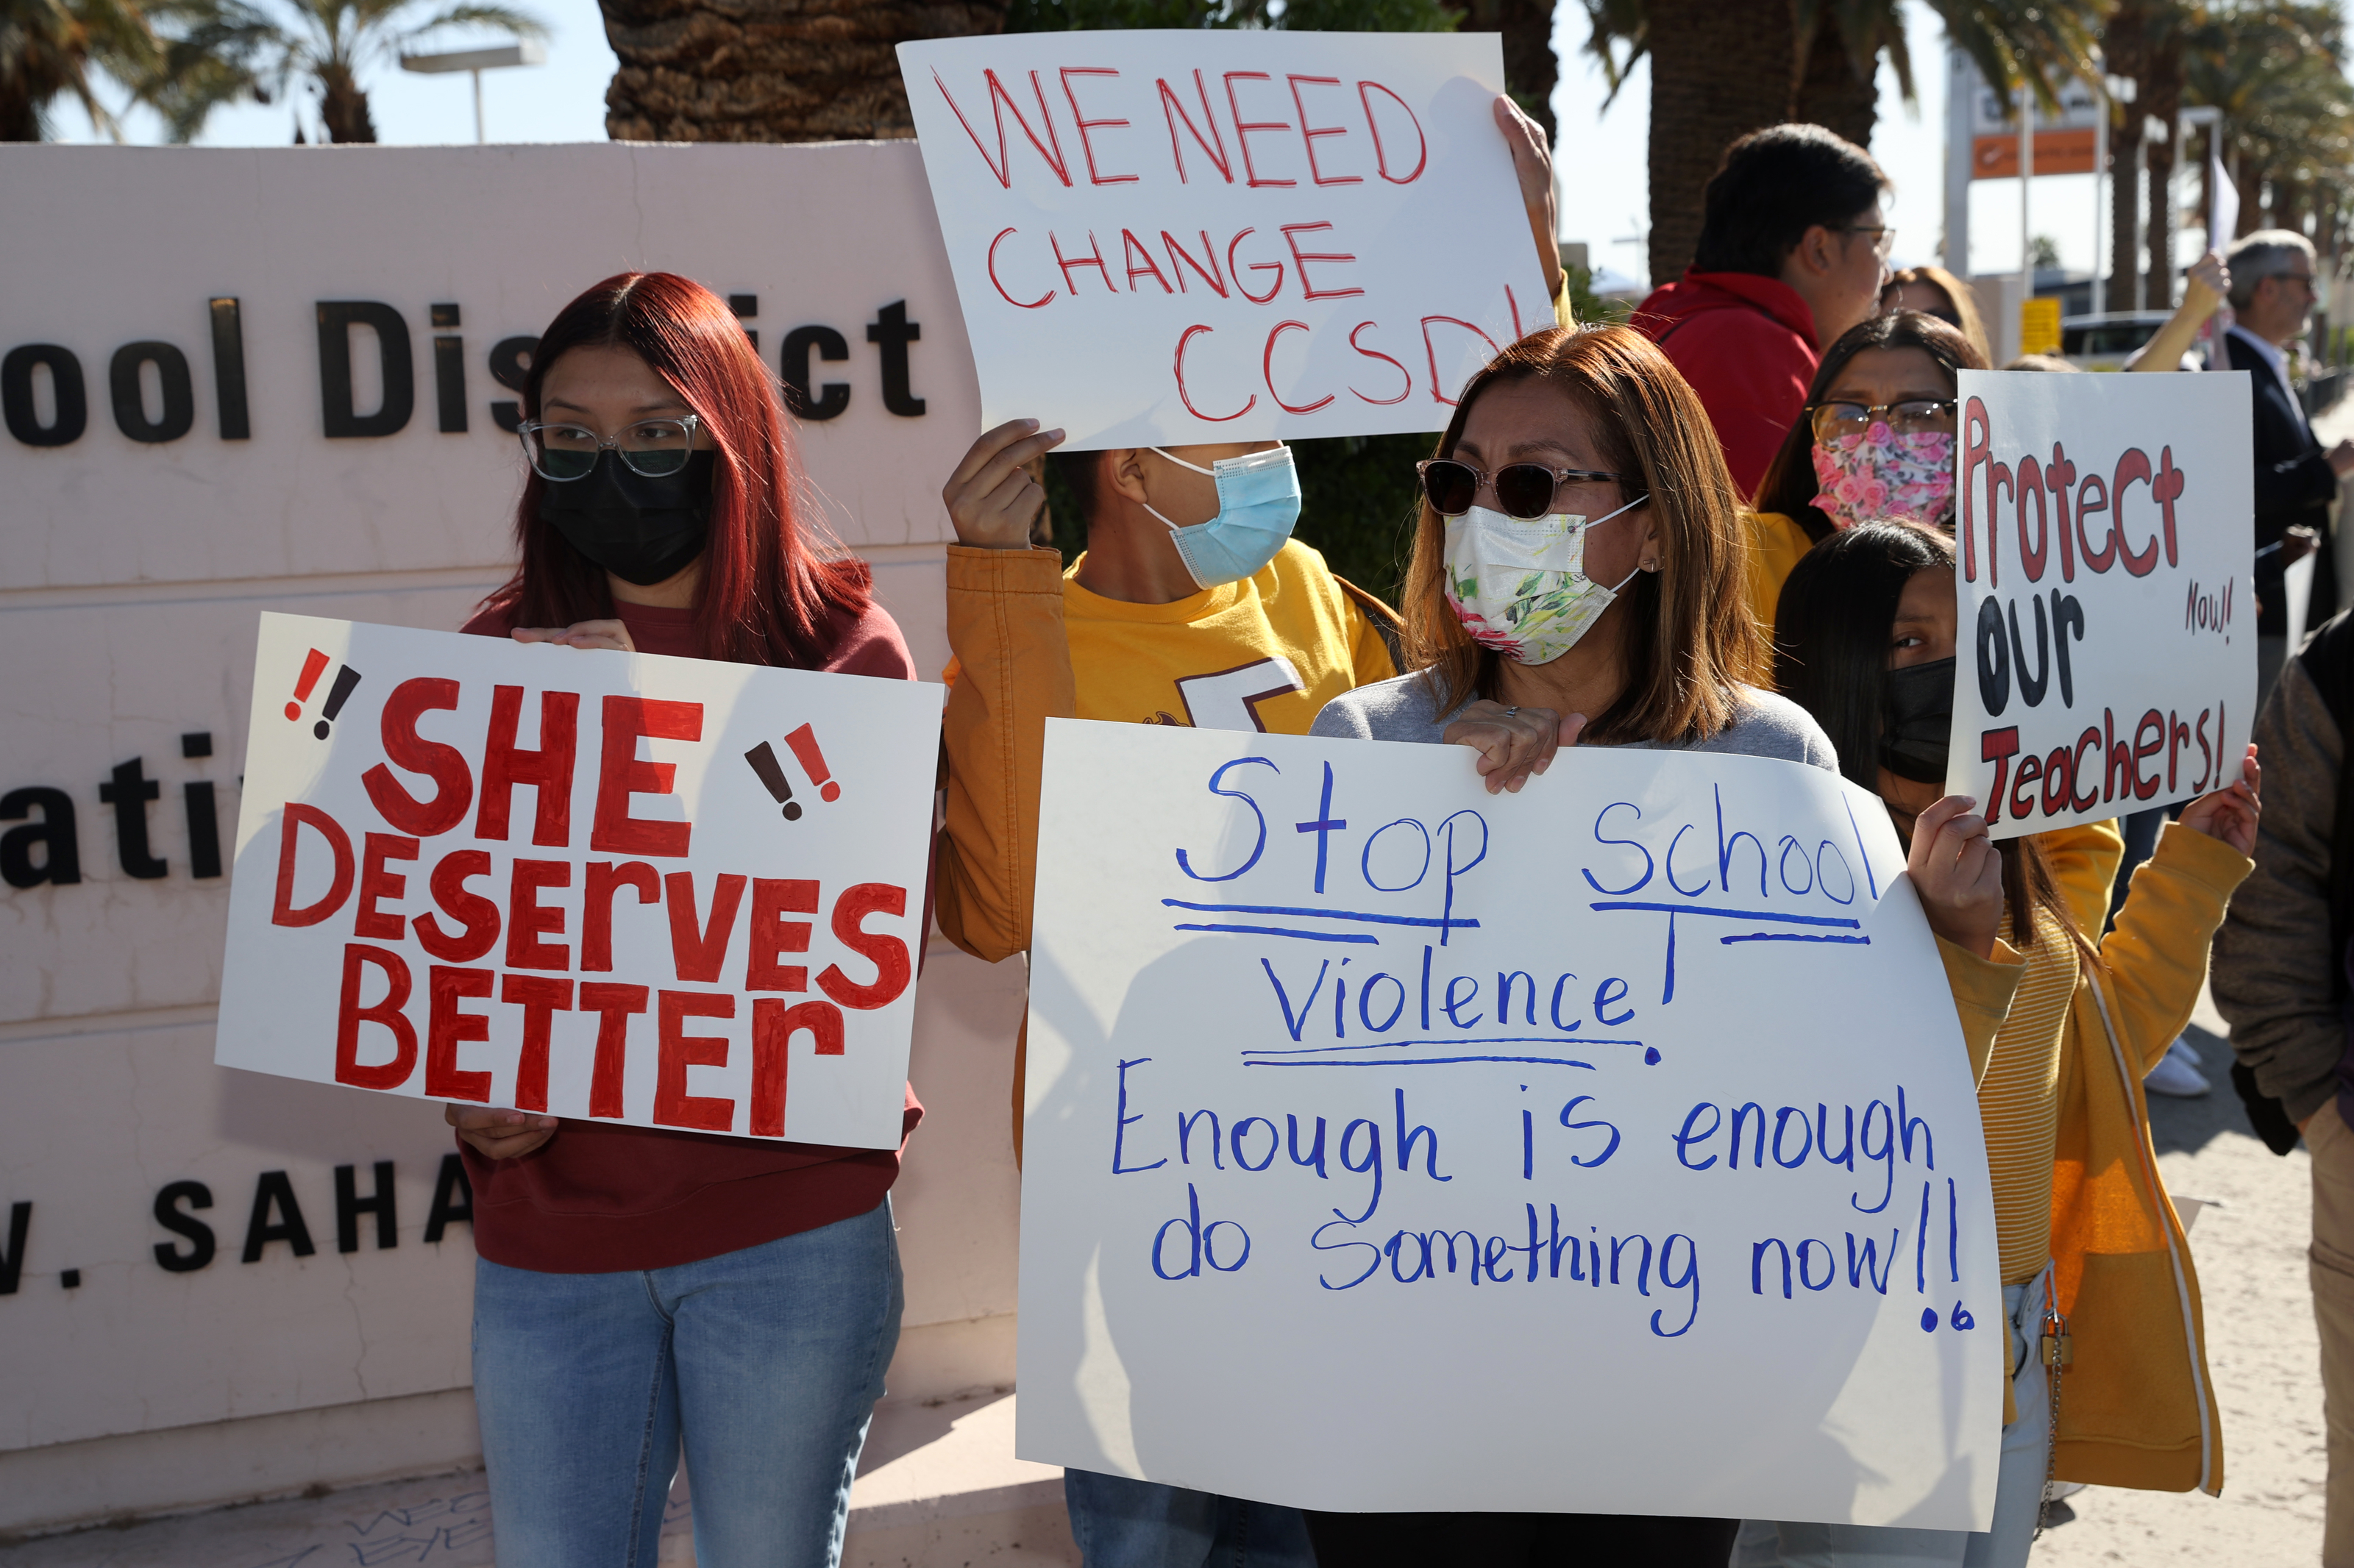 Protes terhadap kekerasan sekolah CCSD menarik ratusan orang